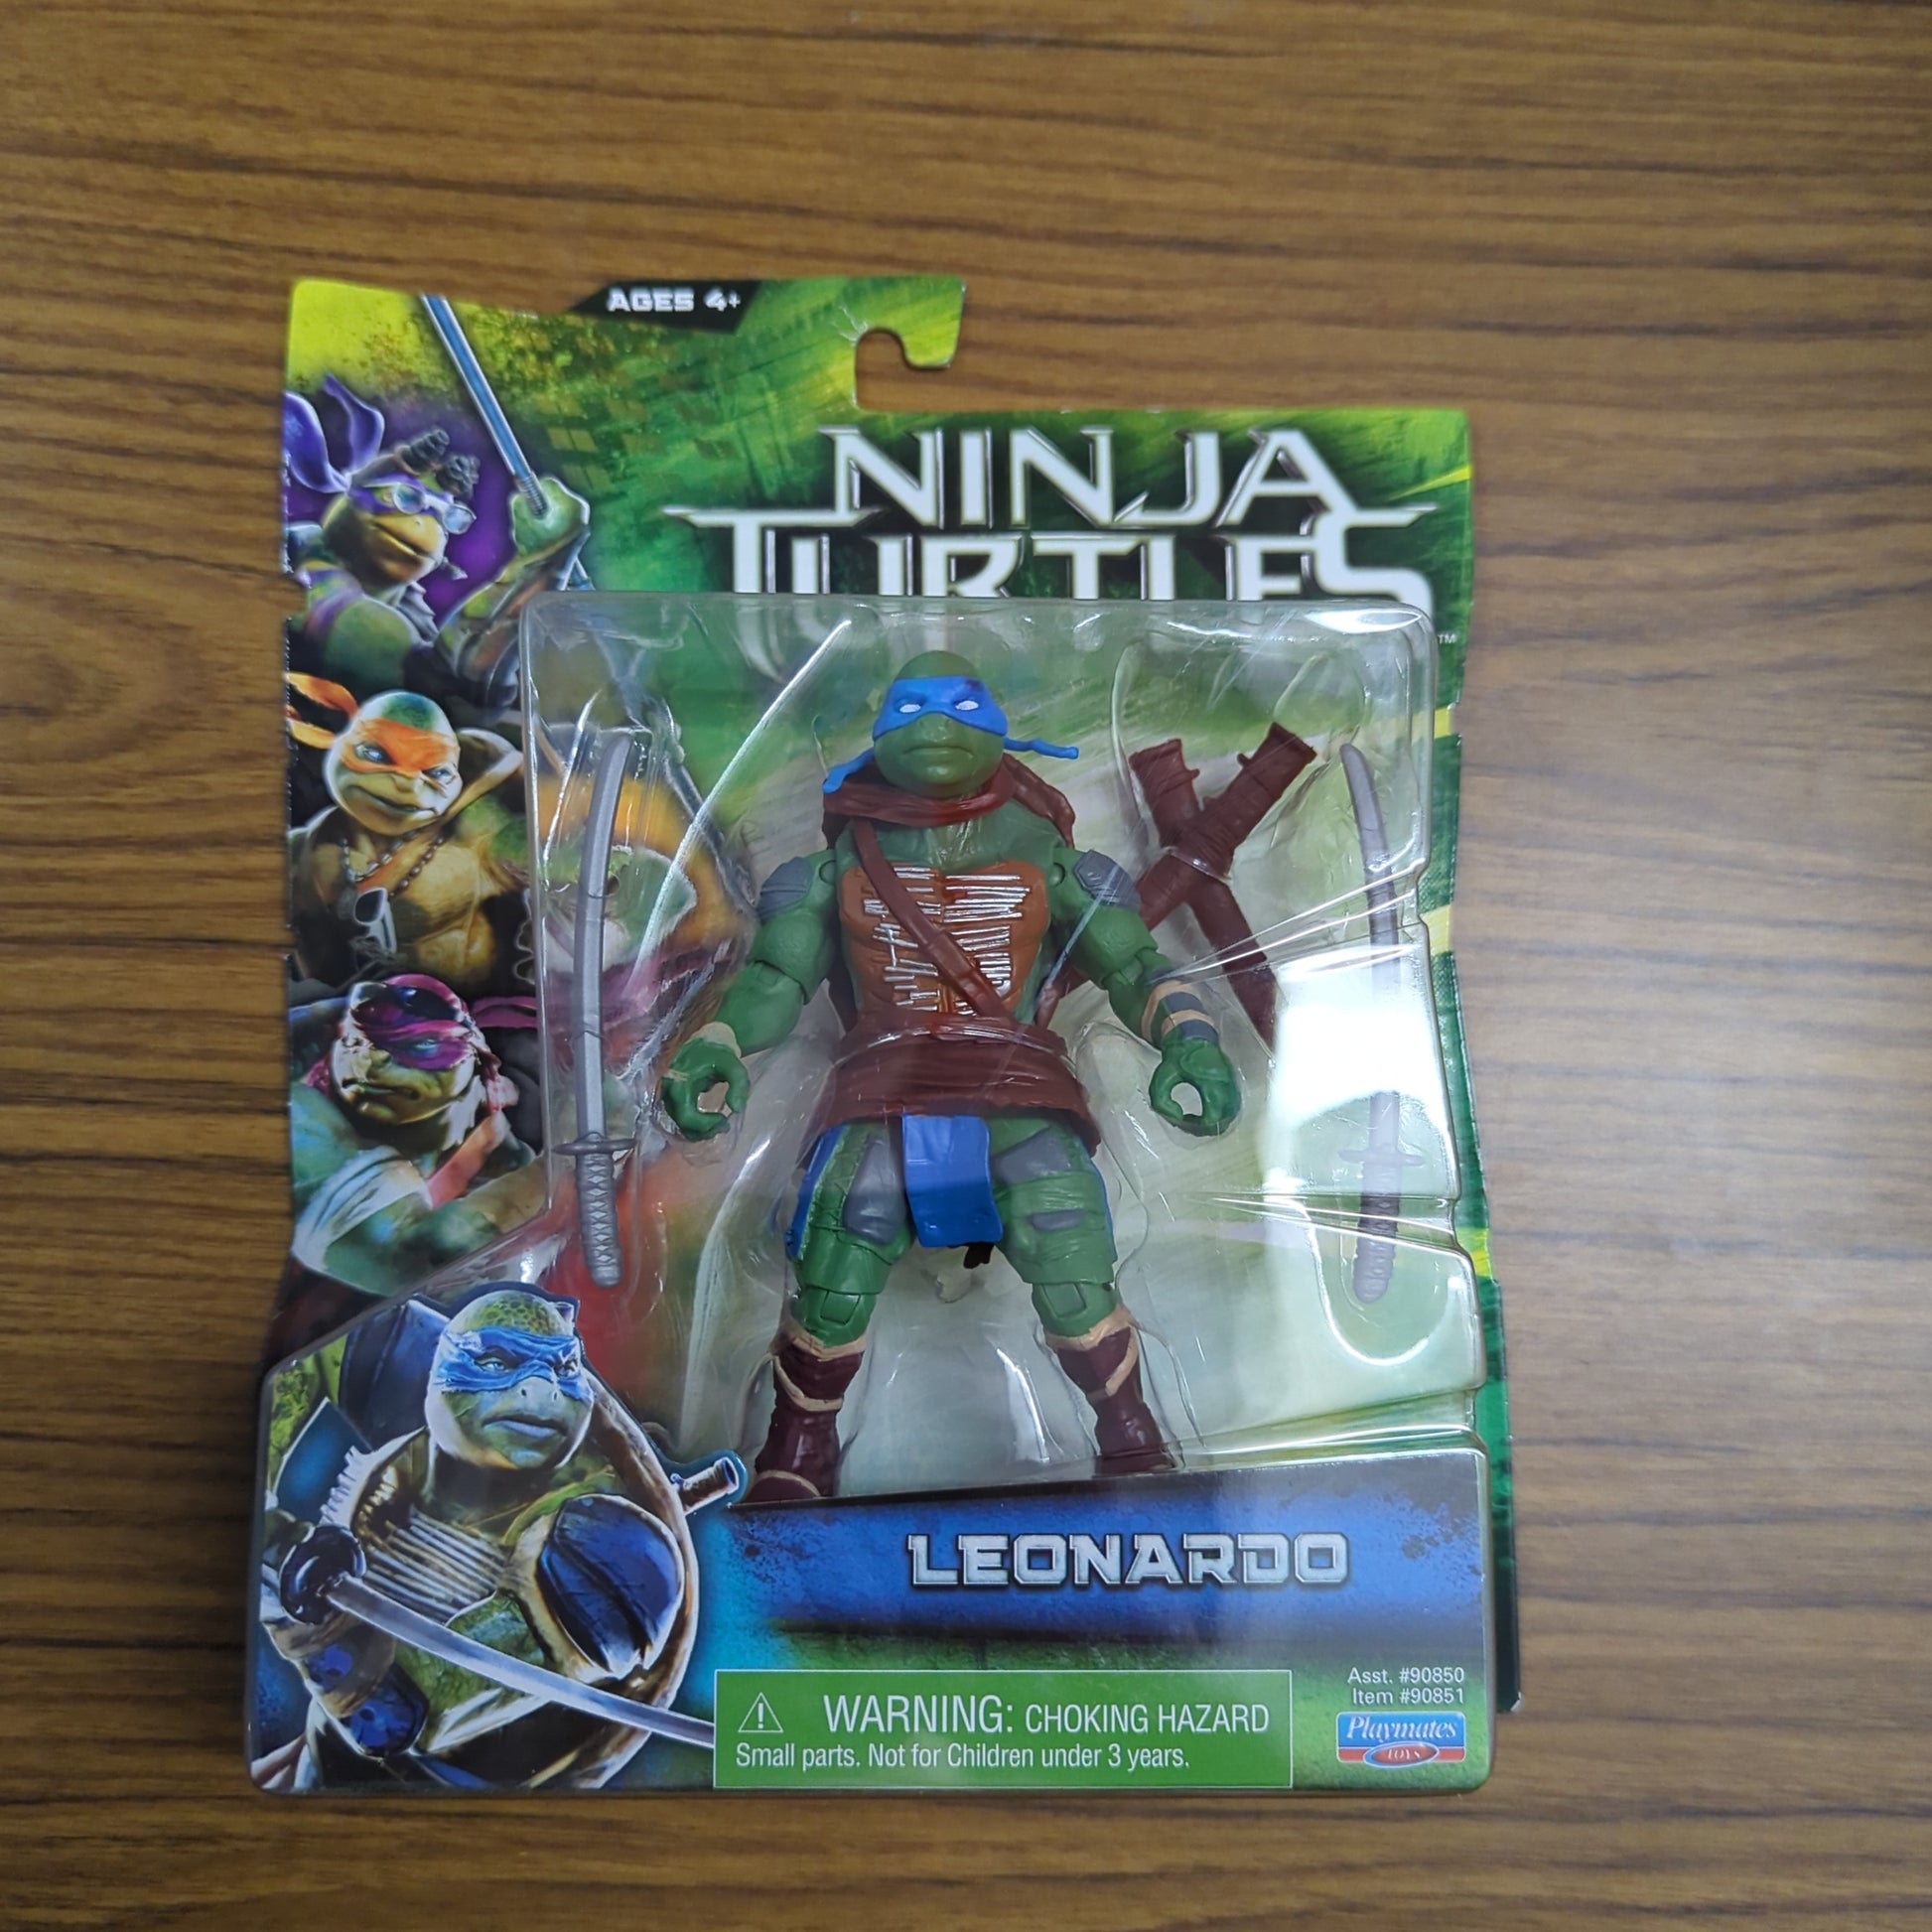 Leonardo Teenage Mutant Ninja Turtles 5" TMNT Action Figure 2014 Playmates FRENLY BRICKS - Open 7 Days